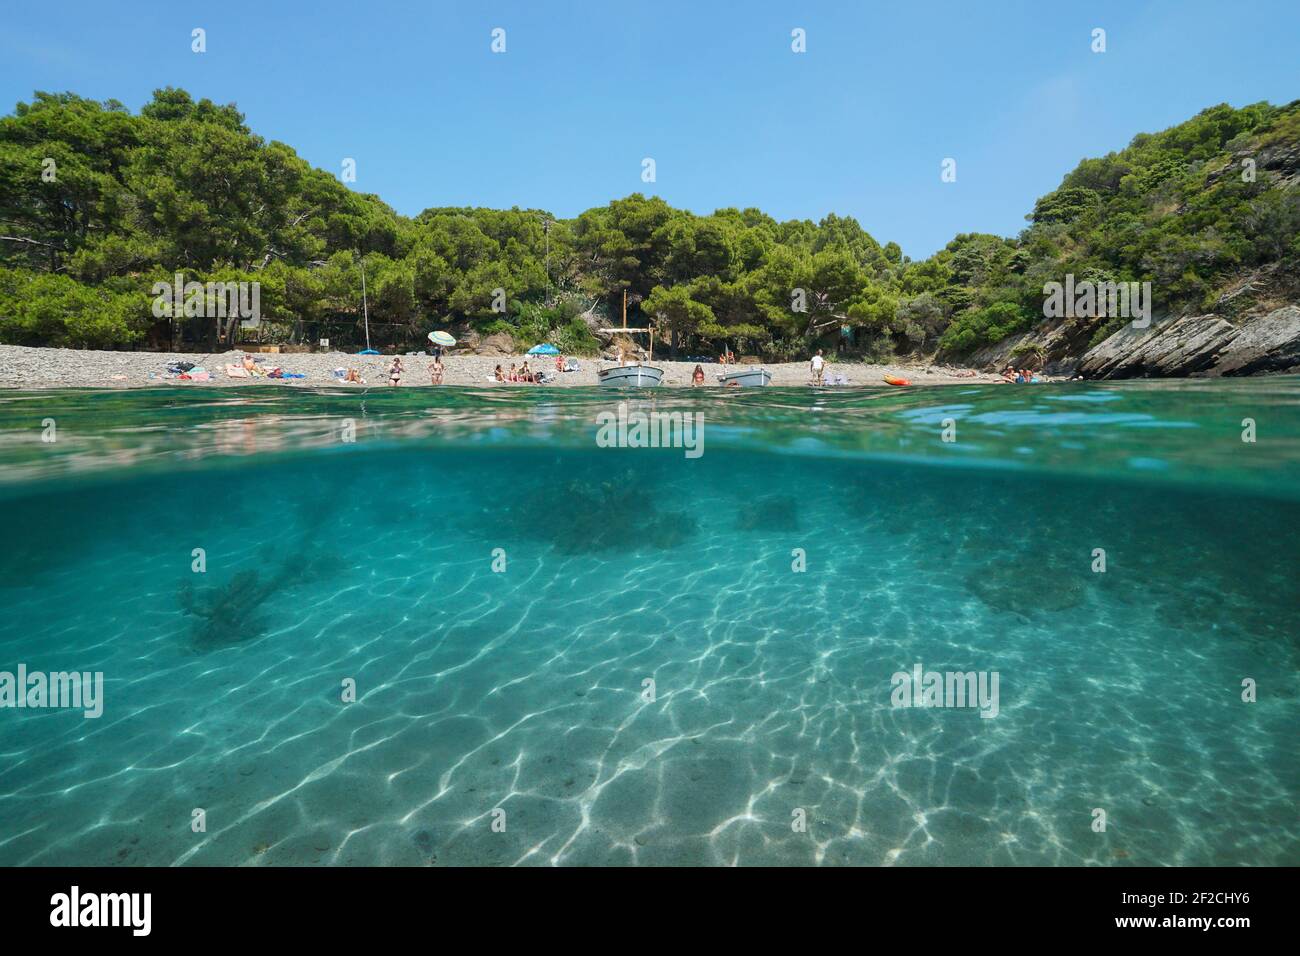 Mittelmeer-Urlaub in Spanien, ruhige Bucht mit Touristen am Strand, Split Blick über und unter Wasser Oberfläche, Costa Brava, Katalonien Stockfoto